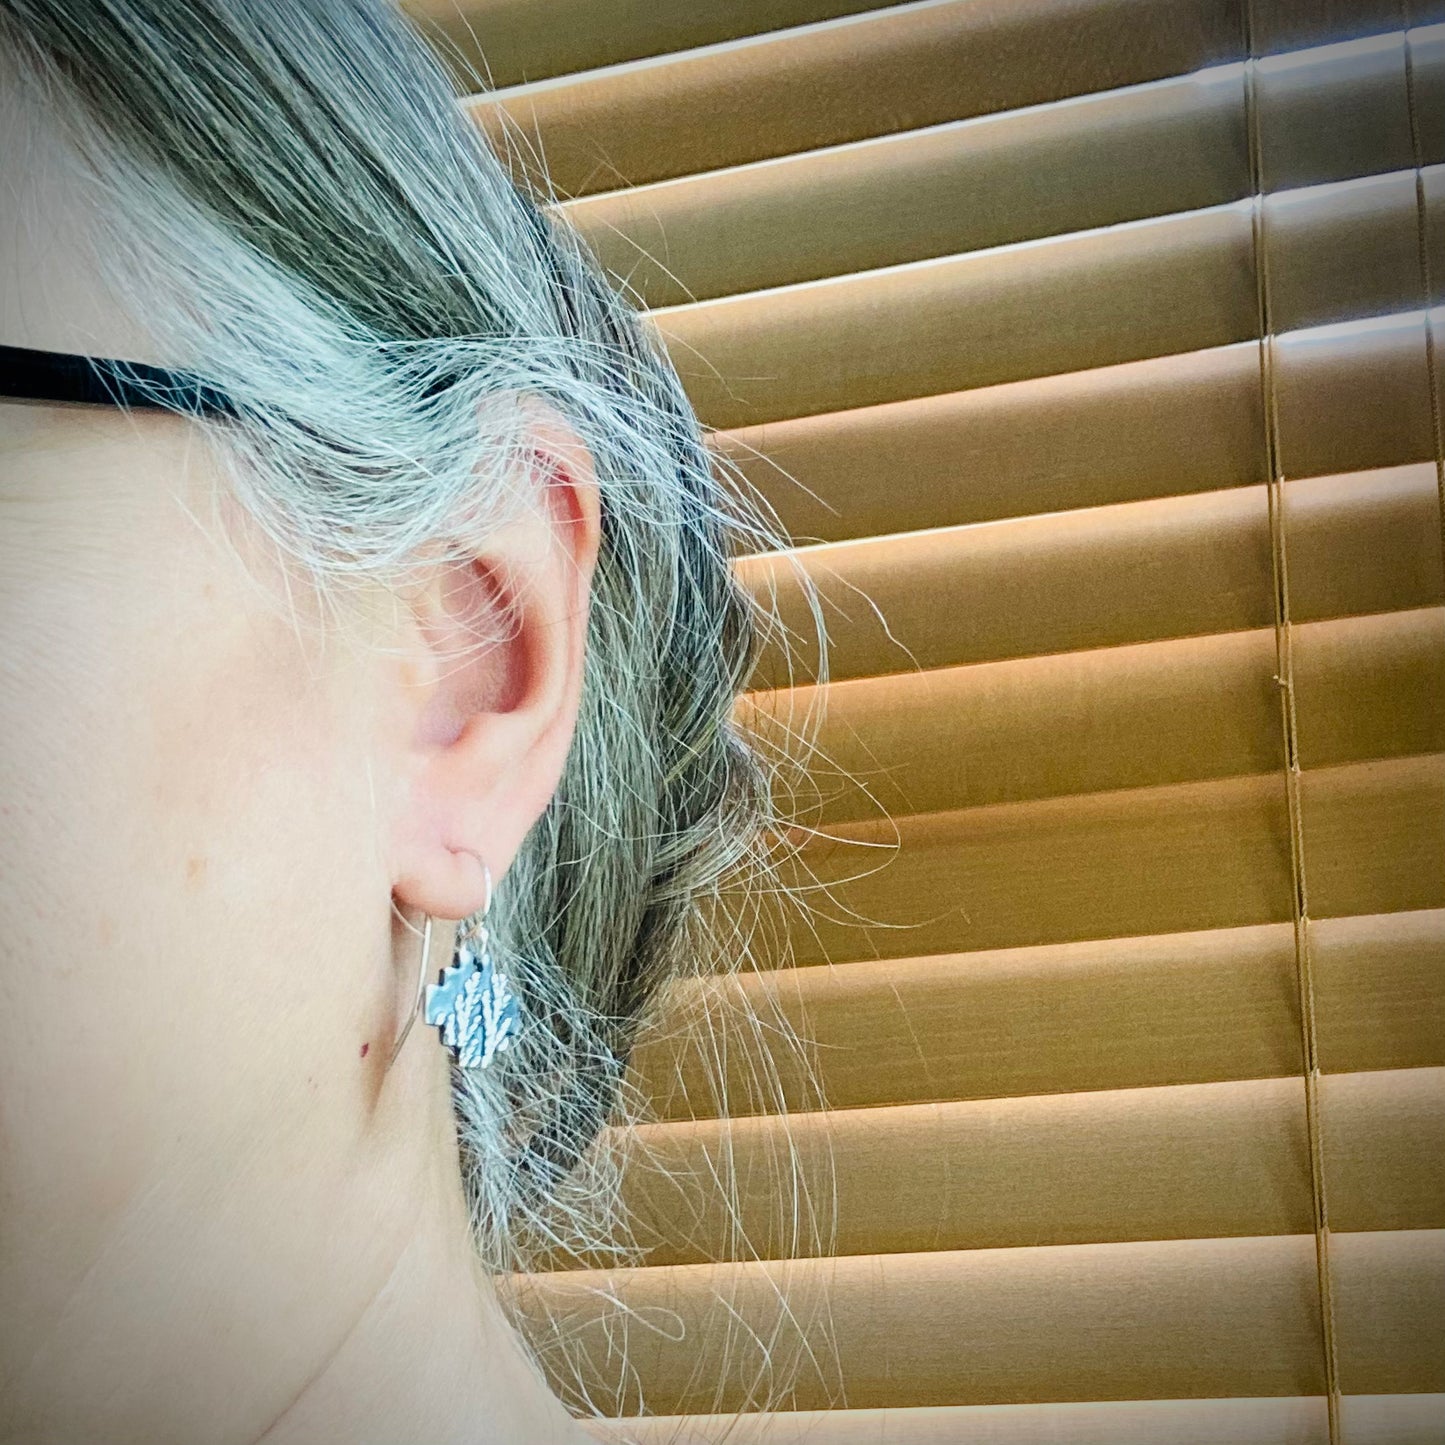 Cedar Impression Earrings in Sterling Silver